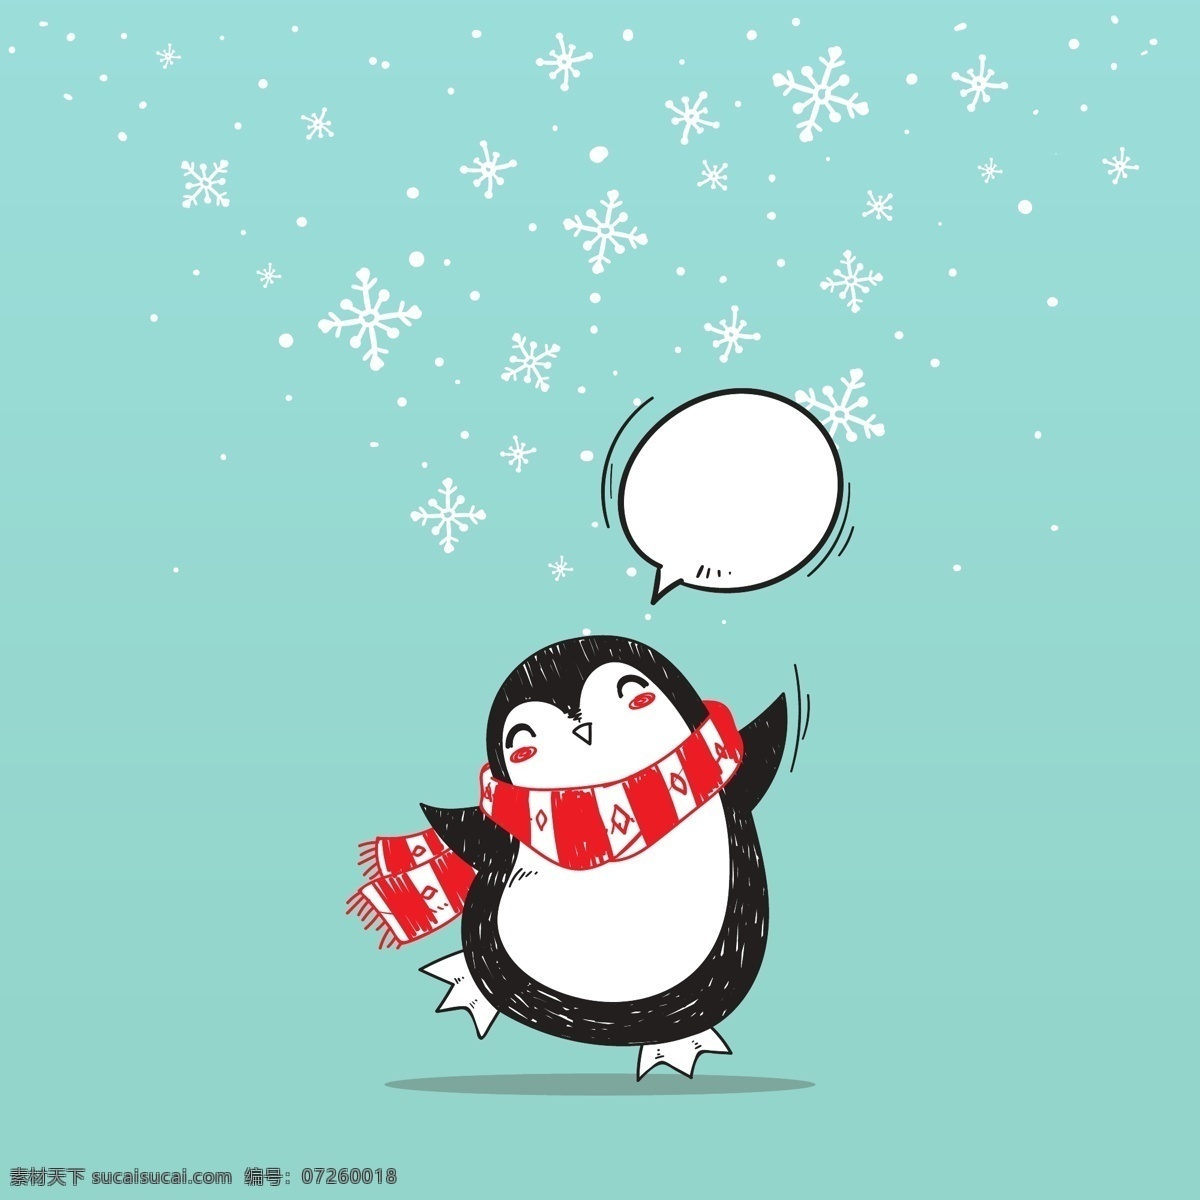 企鹅小卡片 企鹅 雪花 冬天 可爱 卡片 名片卡片